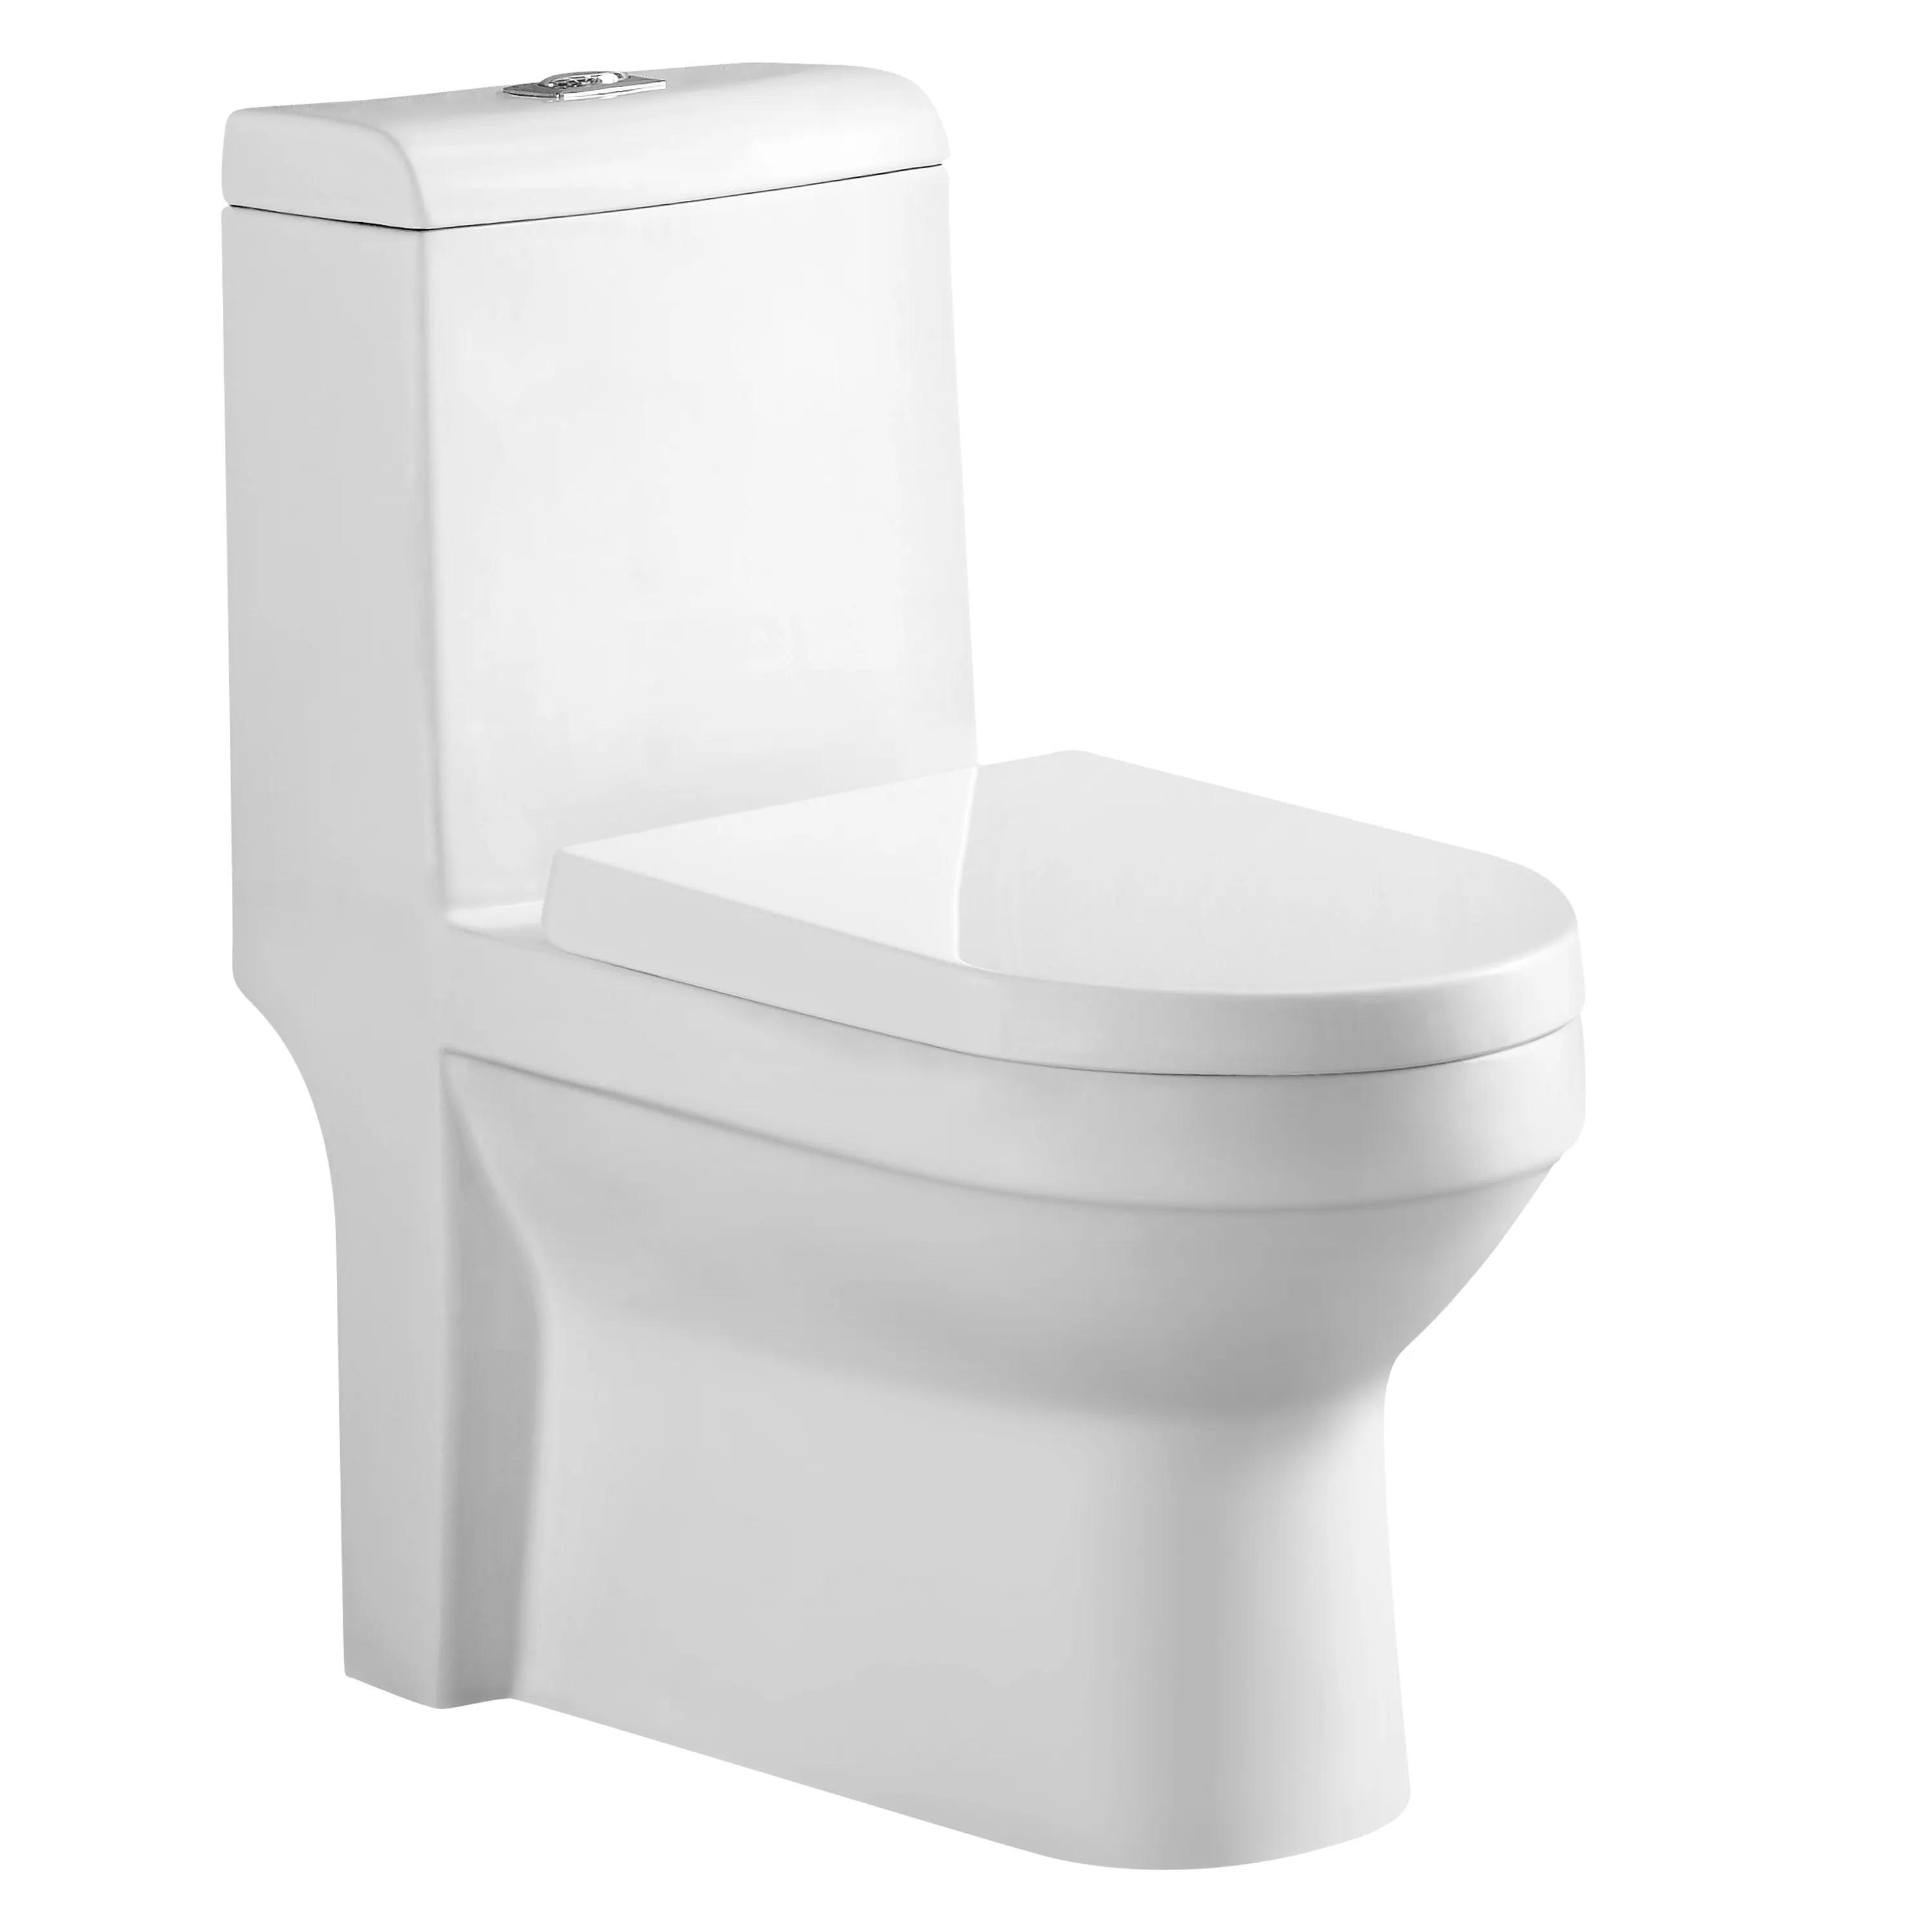 Design moderno barato louças sanitárias closestool cerâmica toalete de duas partes